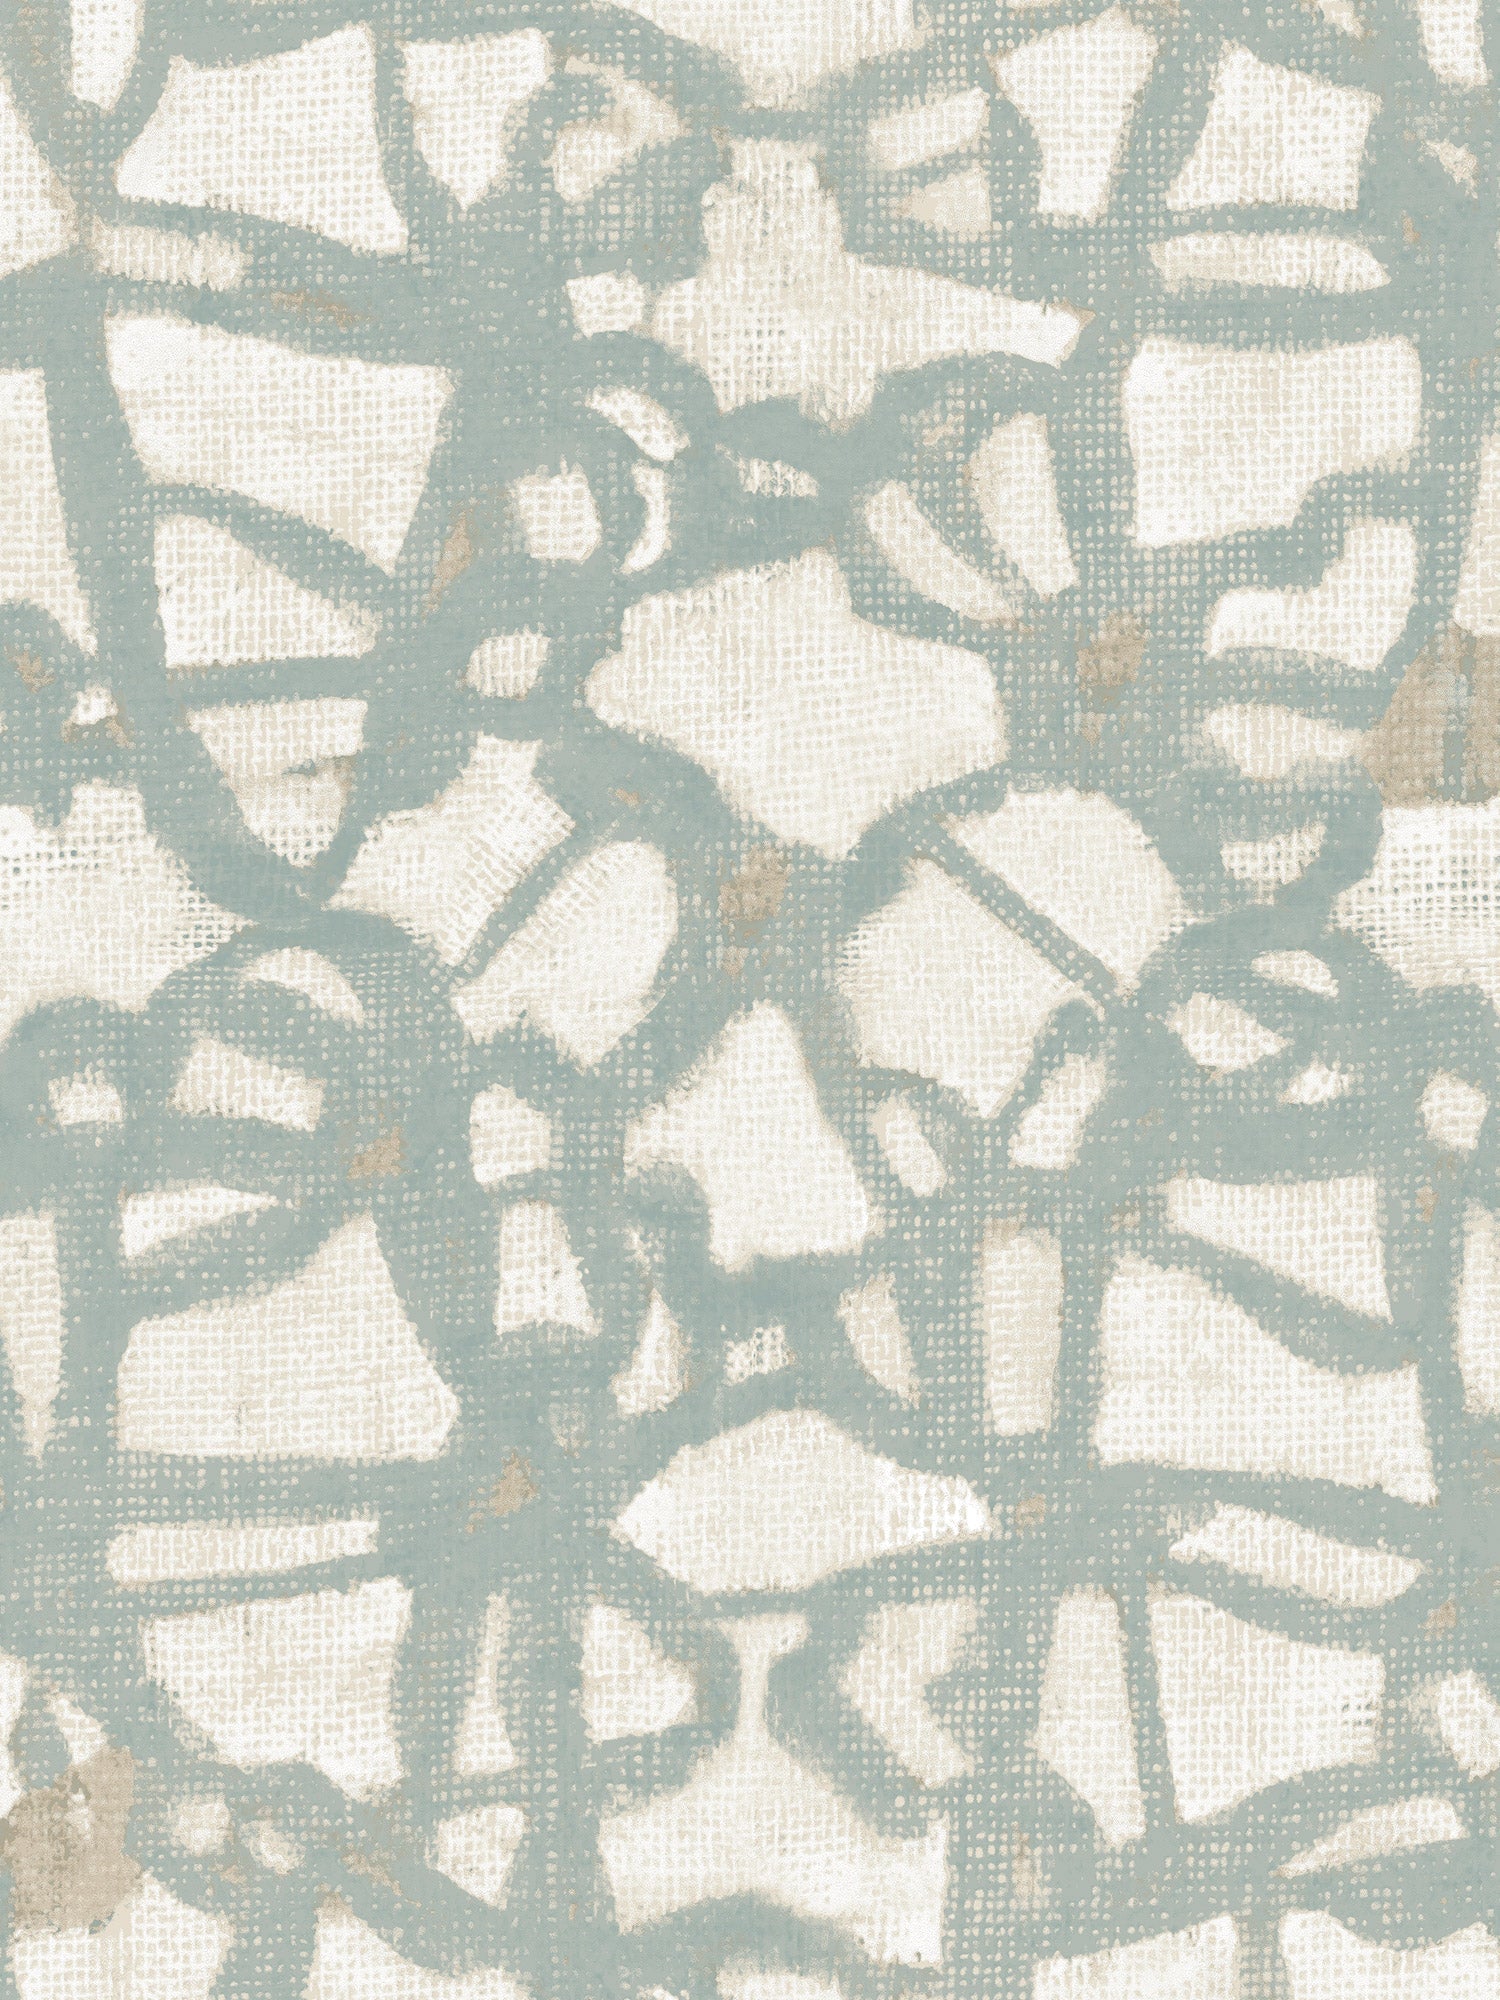 Lineament Wallpaper